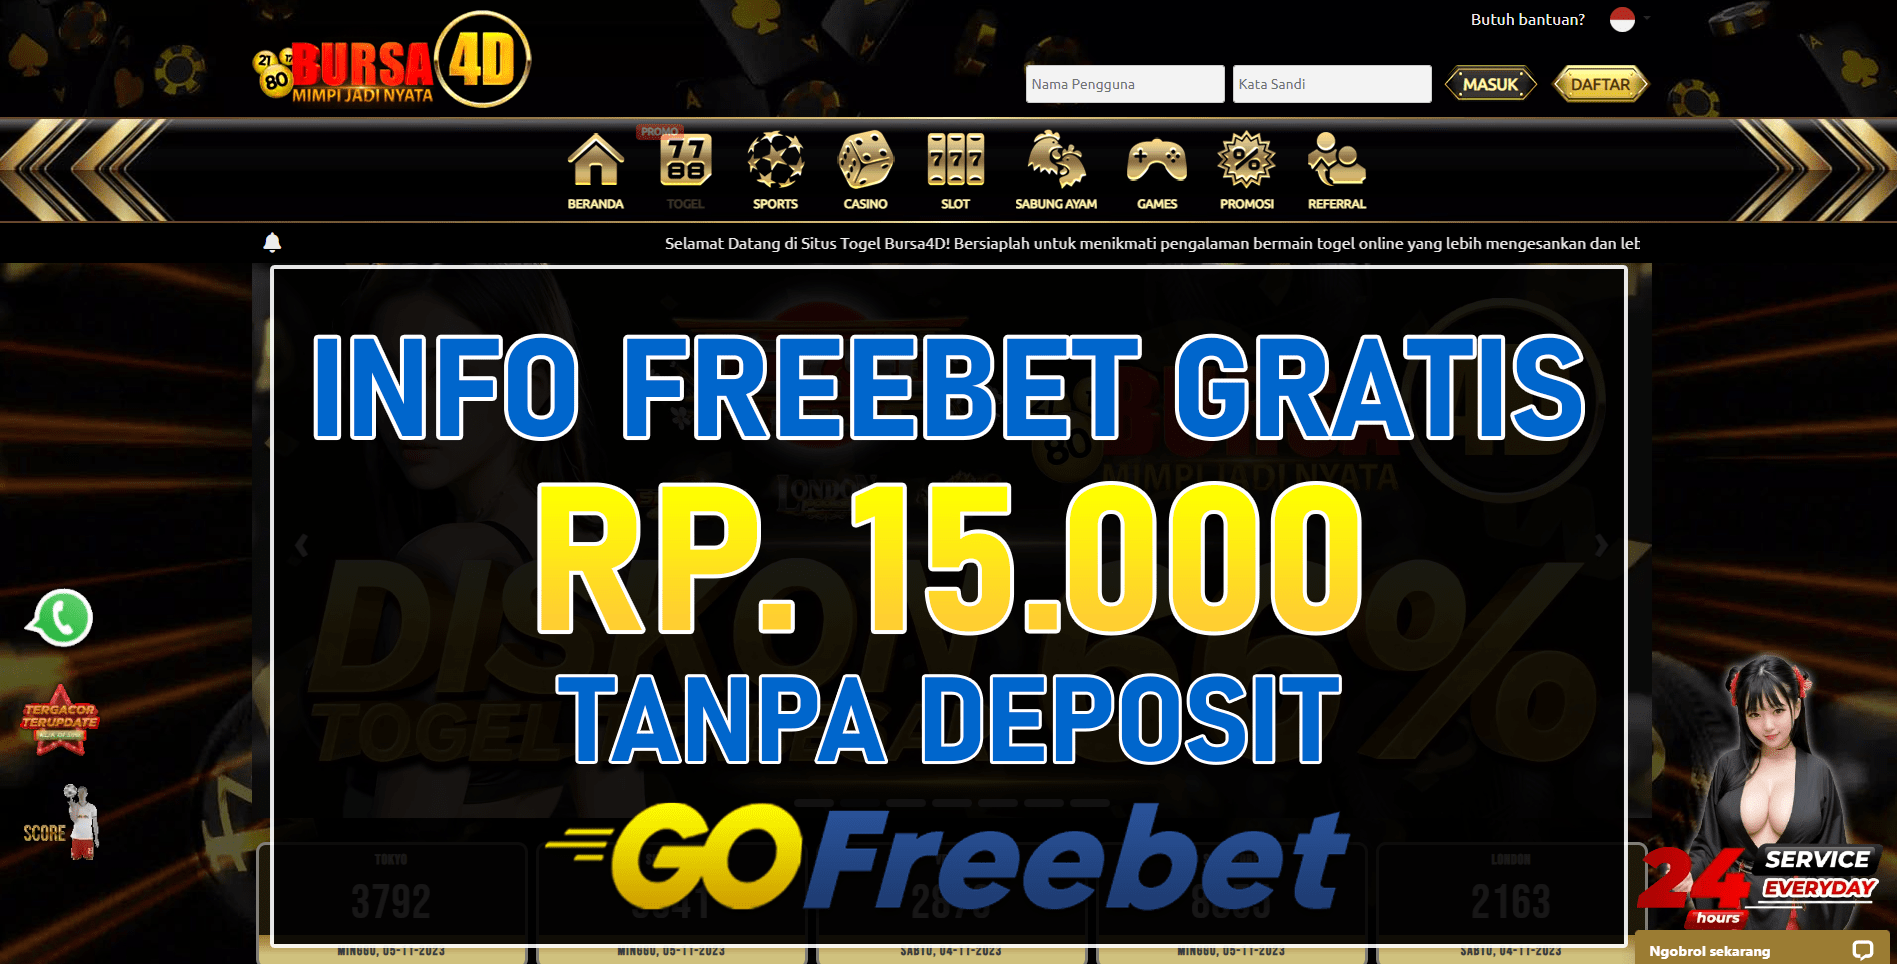 Bursa4d Freebet Gratis Rp 15.000 Tanpa Deposit Terbaru